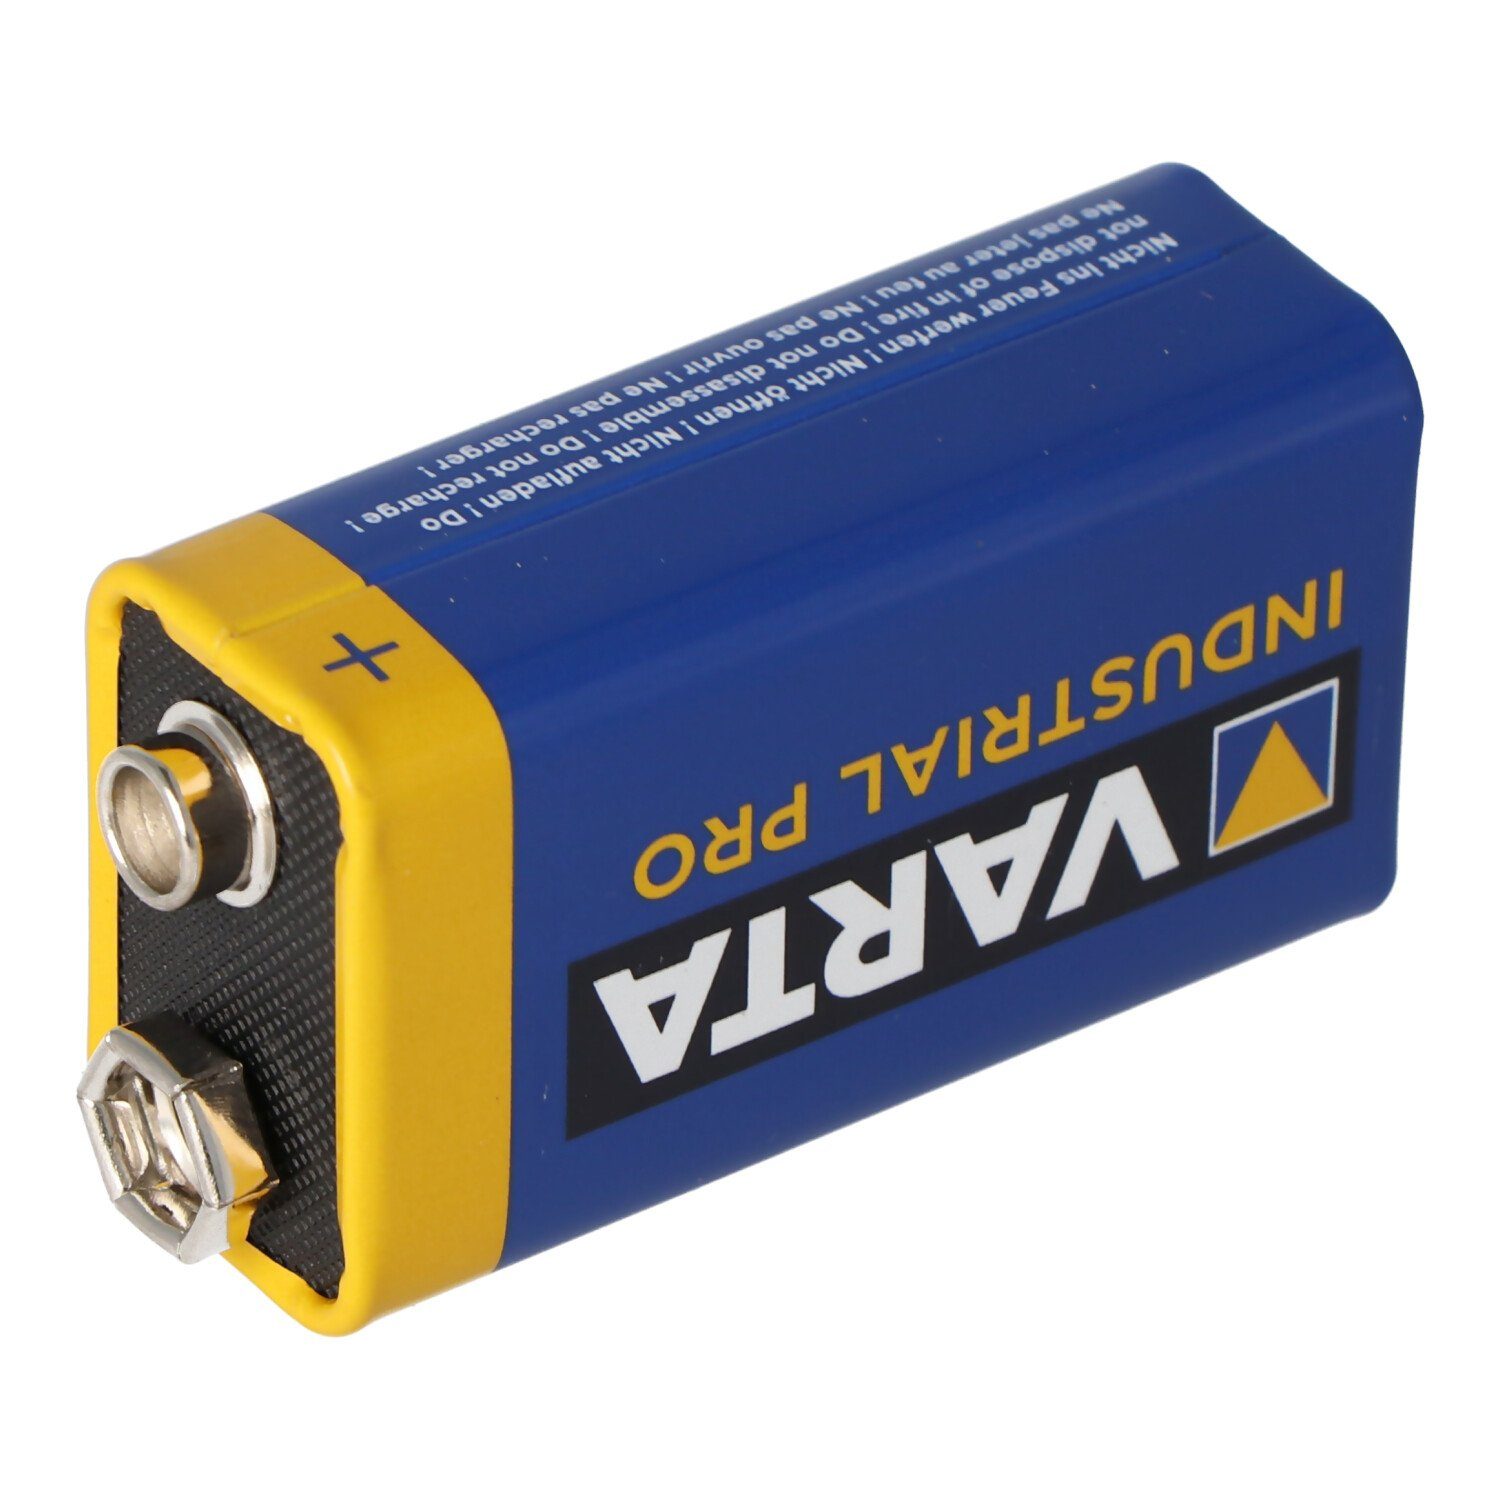 (9,0 9 4022 Batterie V) Varta 6AM6 550mAh 9-Volt Industrial Batterie, VARTA Volt